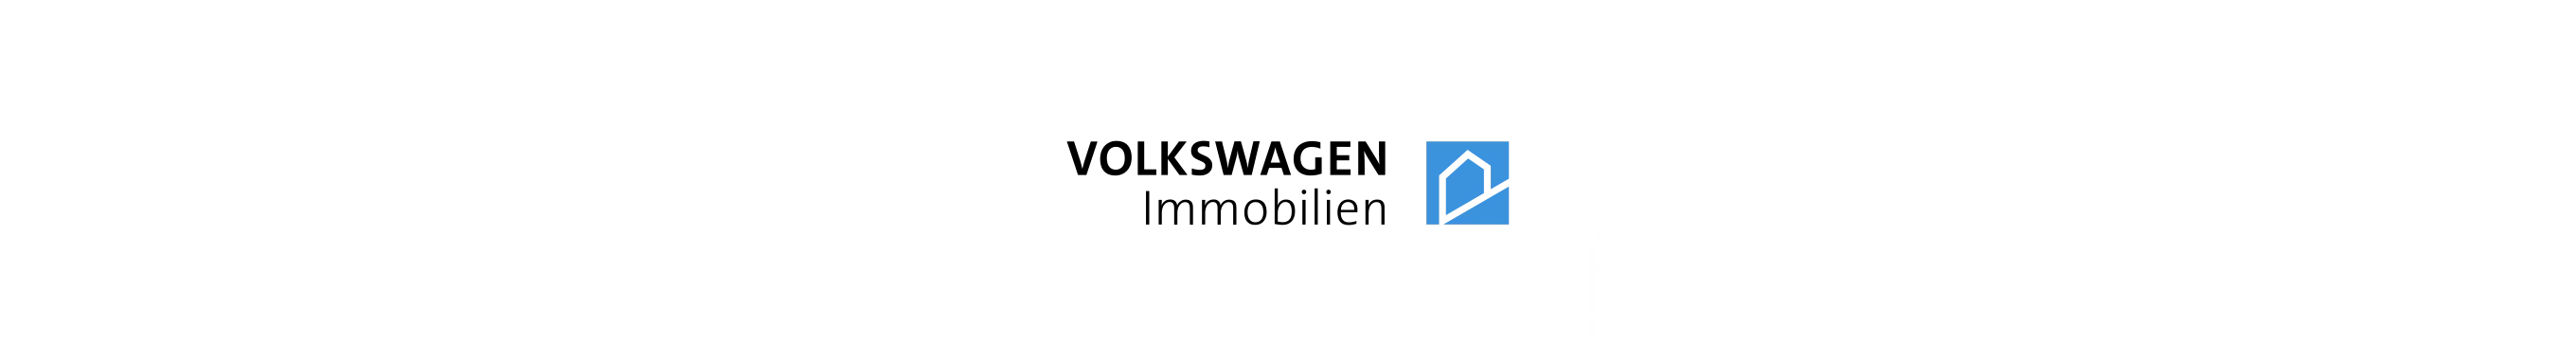 VW Immobilien Logo